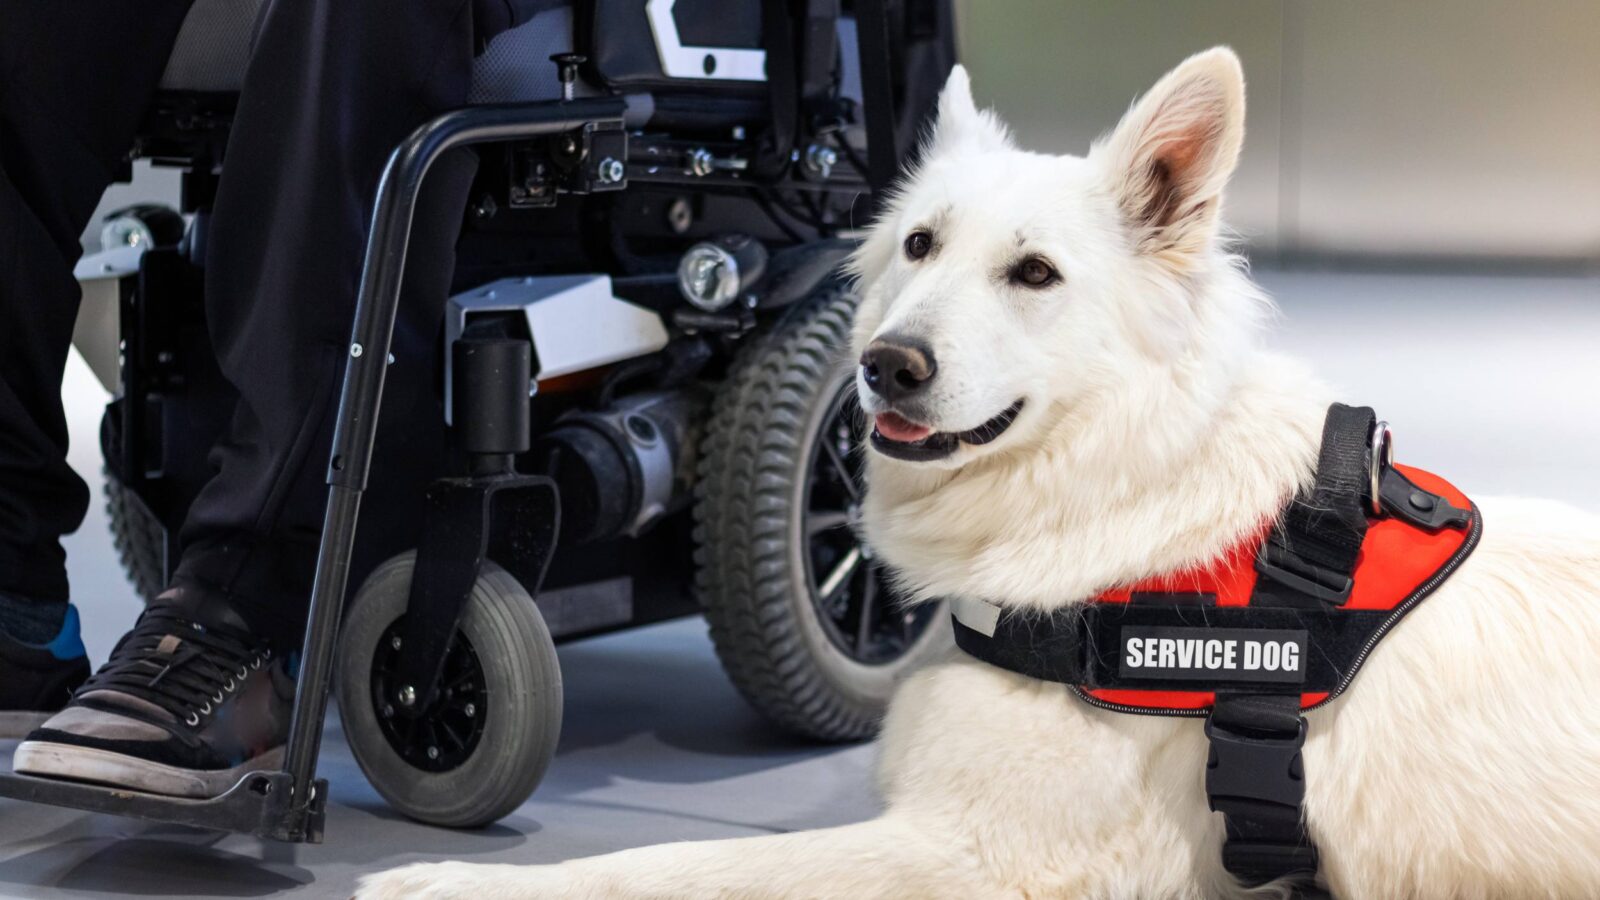 service dog sitting next to wheelchair